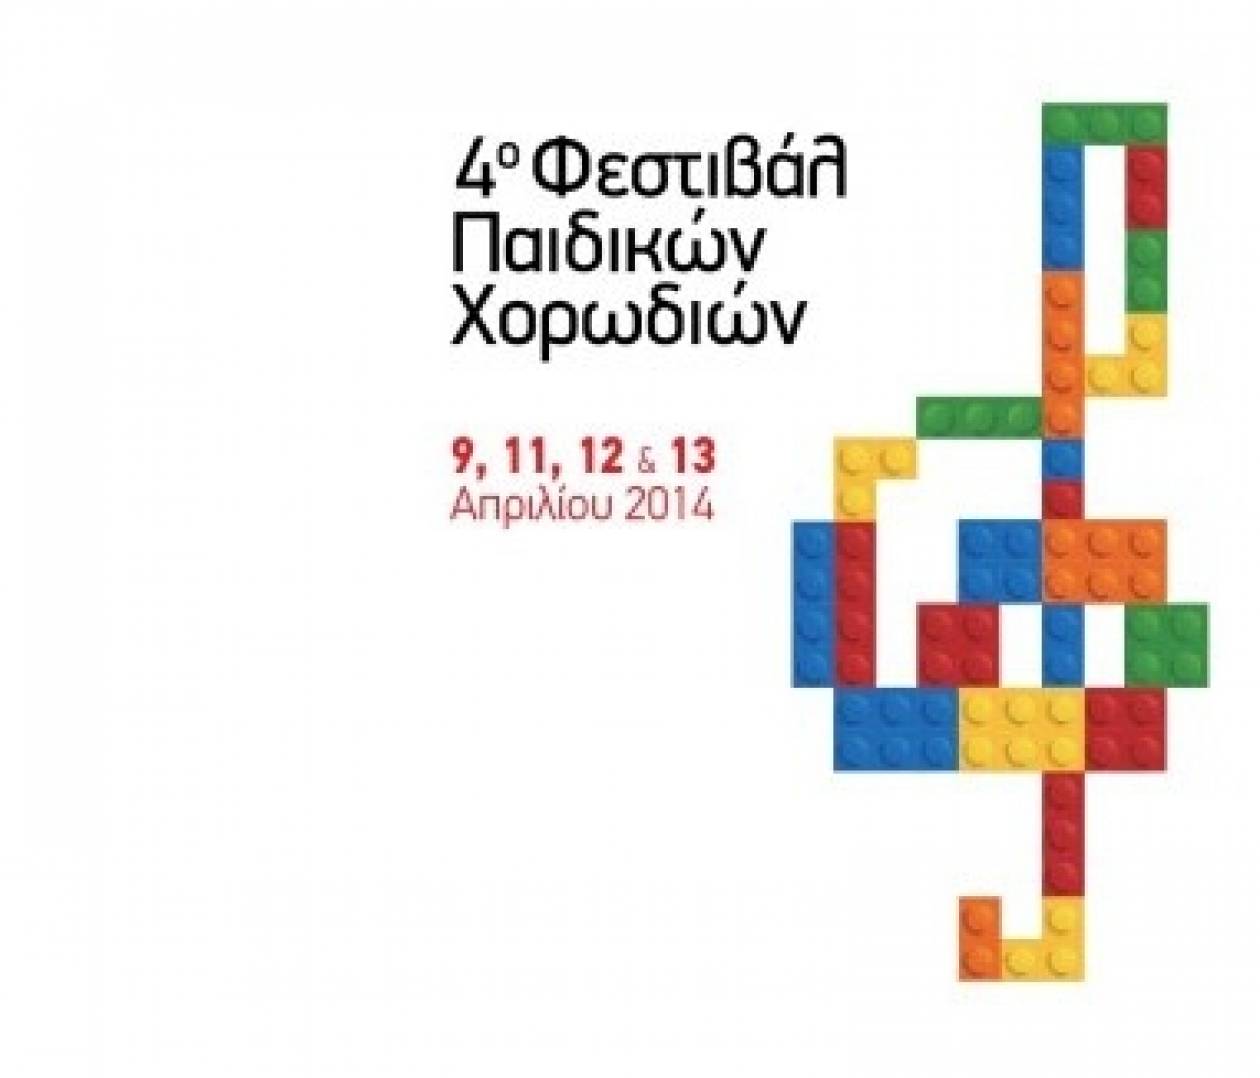 Άρχισε στη Θεσσαλονίκη το 4ο Φεστιβάλ Παιδικών Χορωδιών